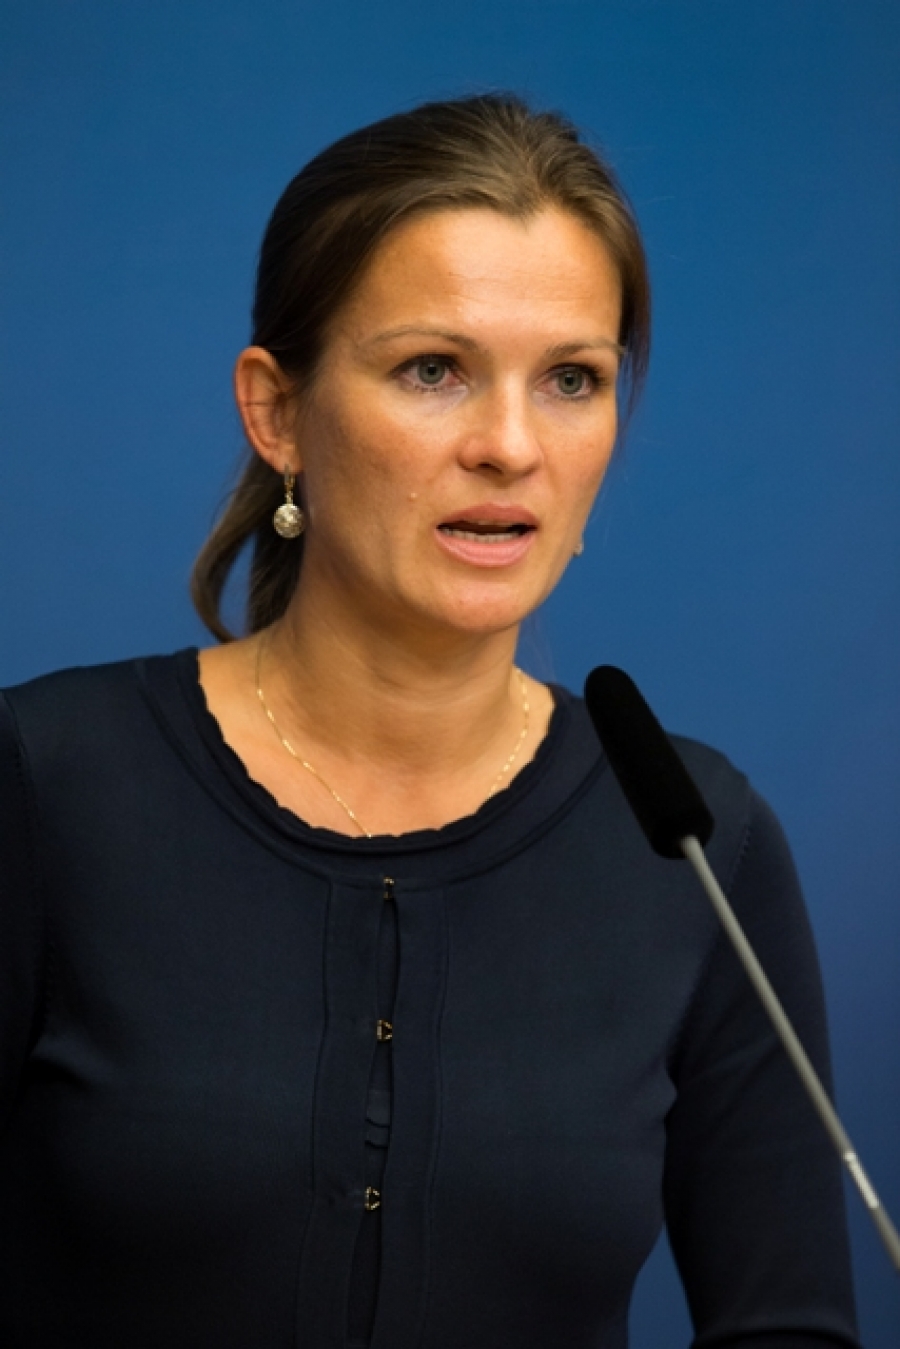 Minister of Foreign Trade and Entrepreneurship Anne Sulling. Photo: Magnus Frderberg/norden.org